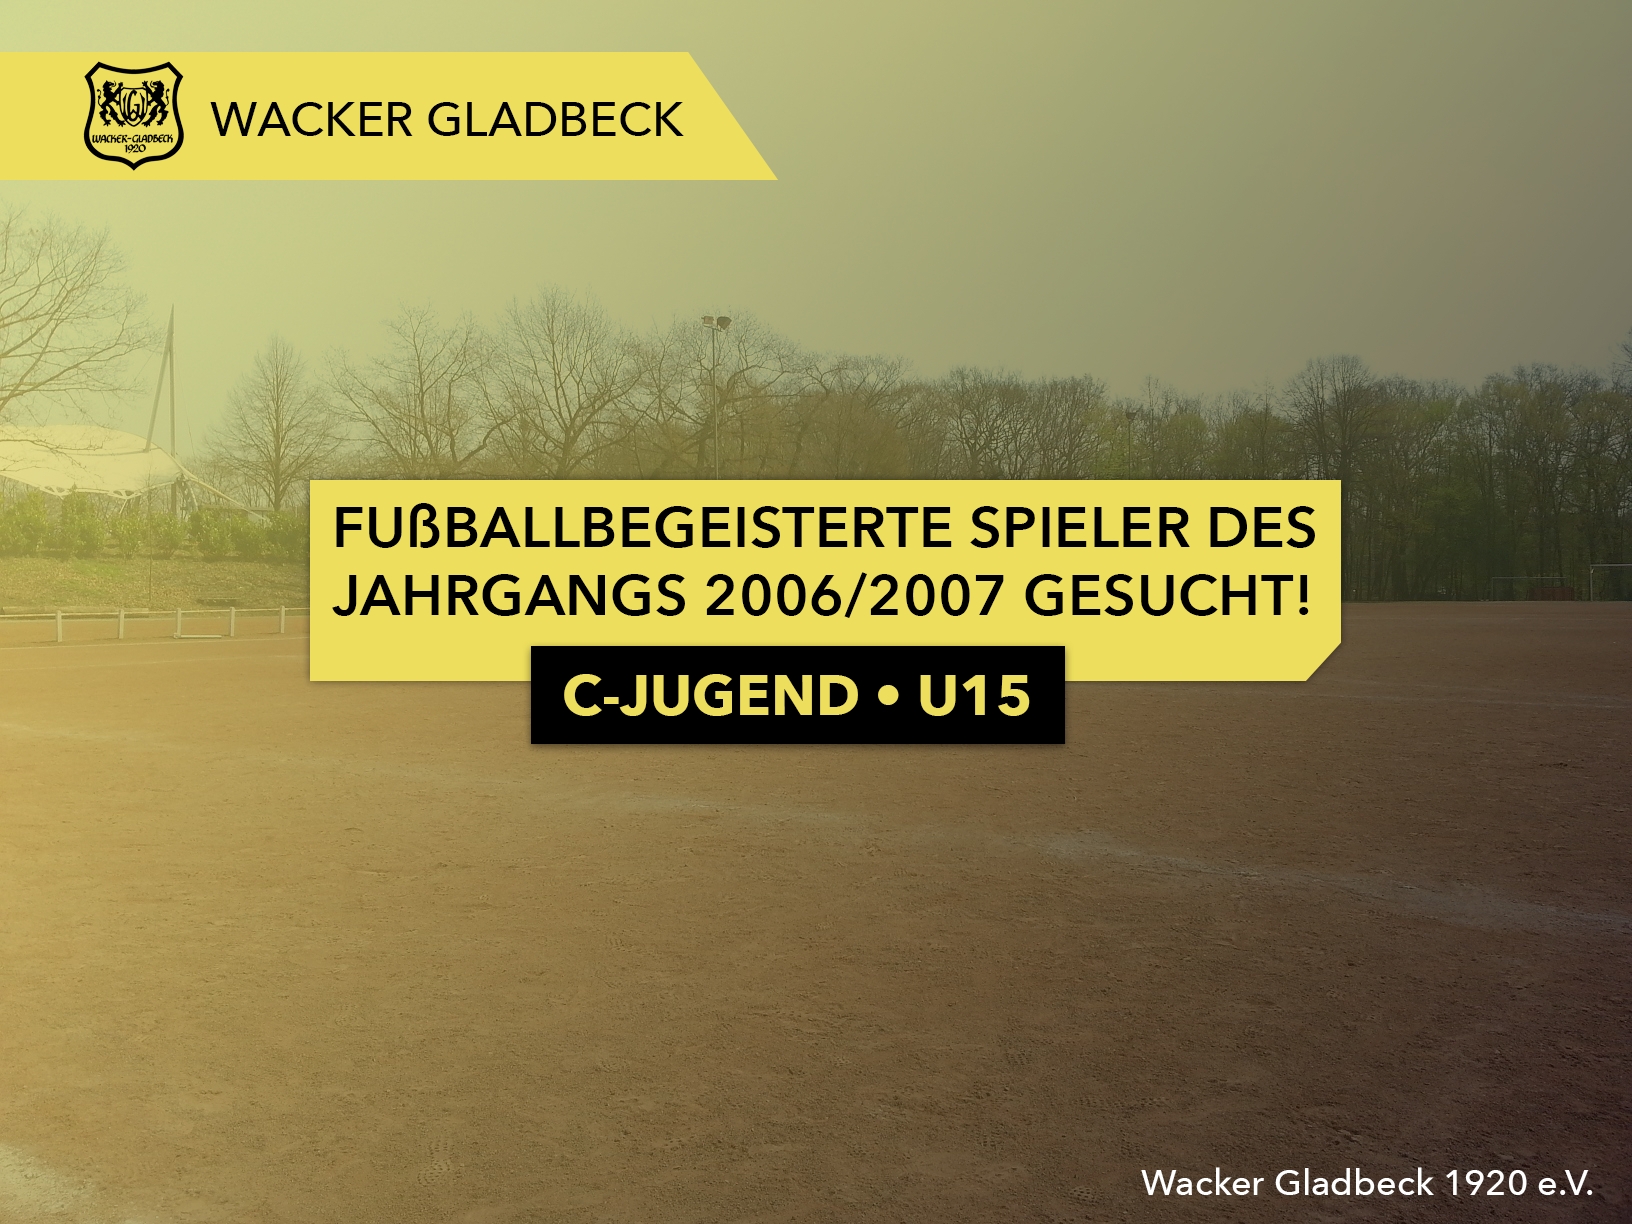 C-Jugend U15: Fußballbegeisterte Spieler des Jahrgangs 2006/2007 gesucht - Wacker Gladbeck